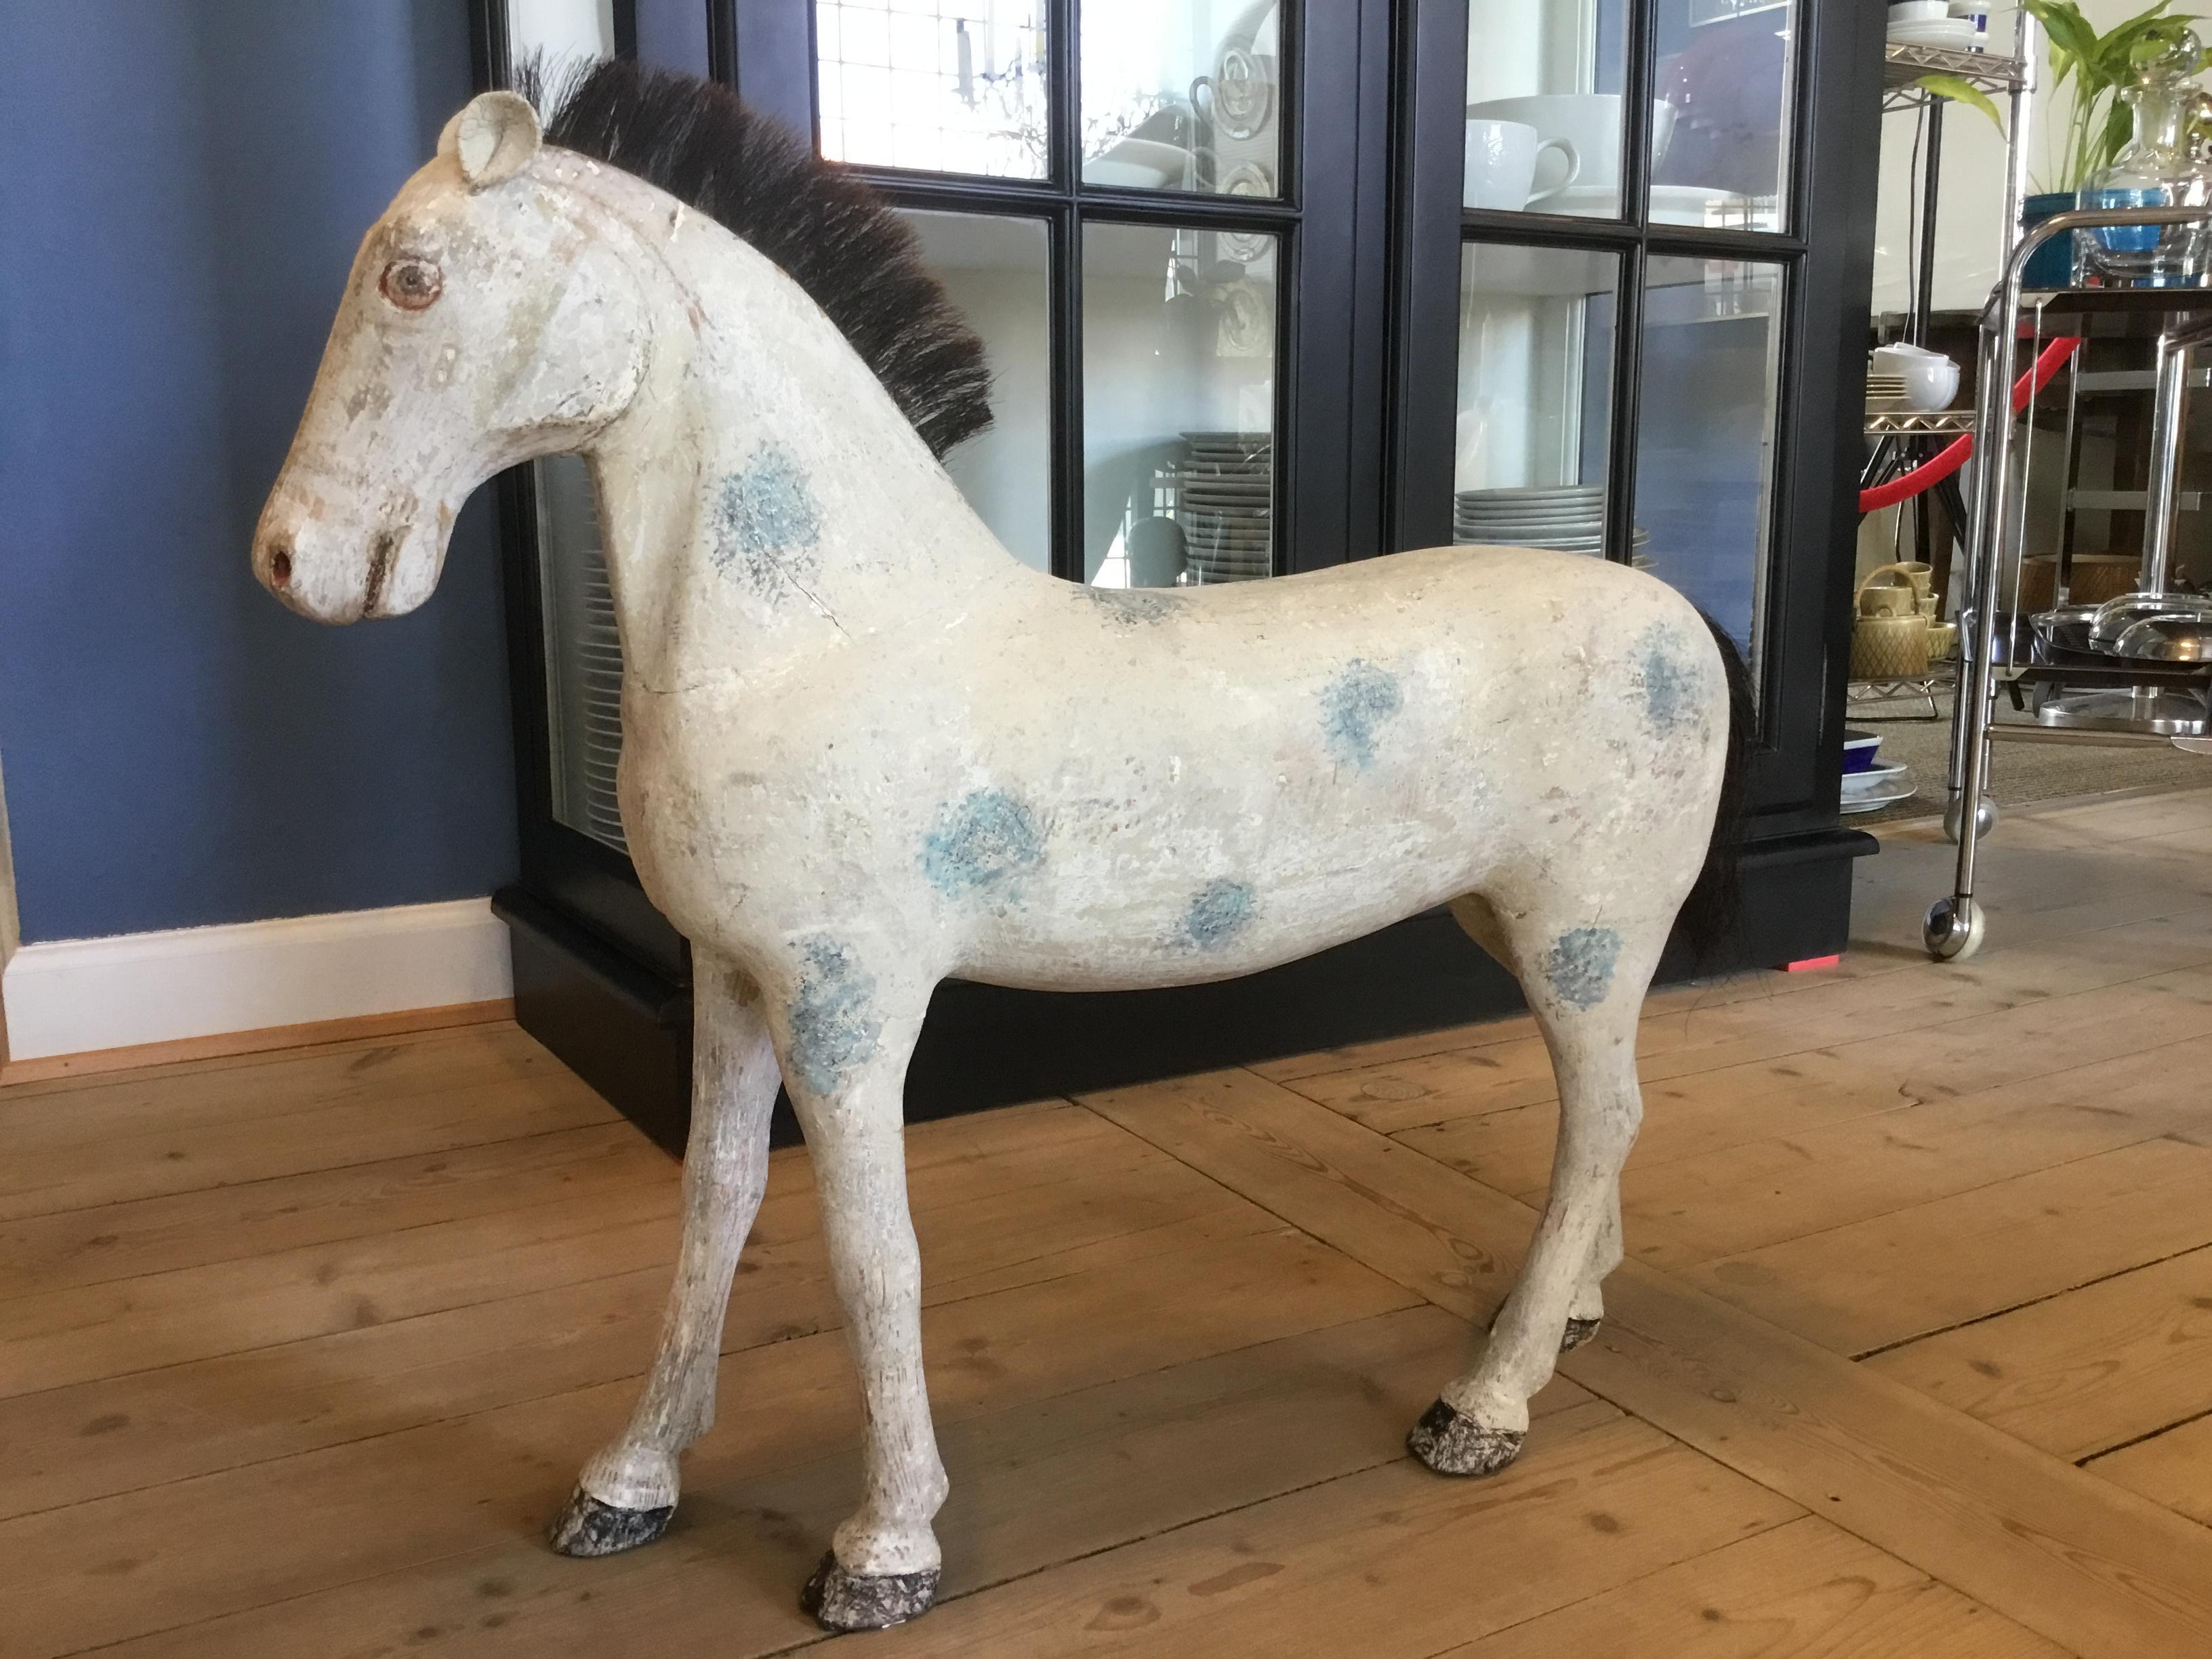 Großes antikes schwedisches Pferd aus geschnitztem Holz mit originaler patinierter Farbe in cremefarben mit blauen Punkten.
Hergestellt gegen Ende des 19. Jahrhunderts.
Die Ohren sind aus Leder gefertigt. Schwanz und Mähne sind aus